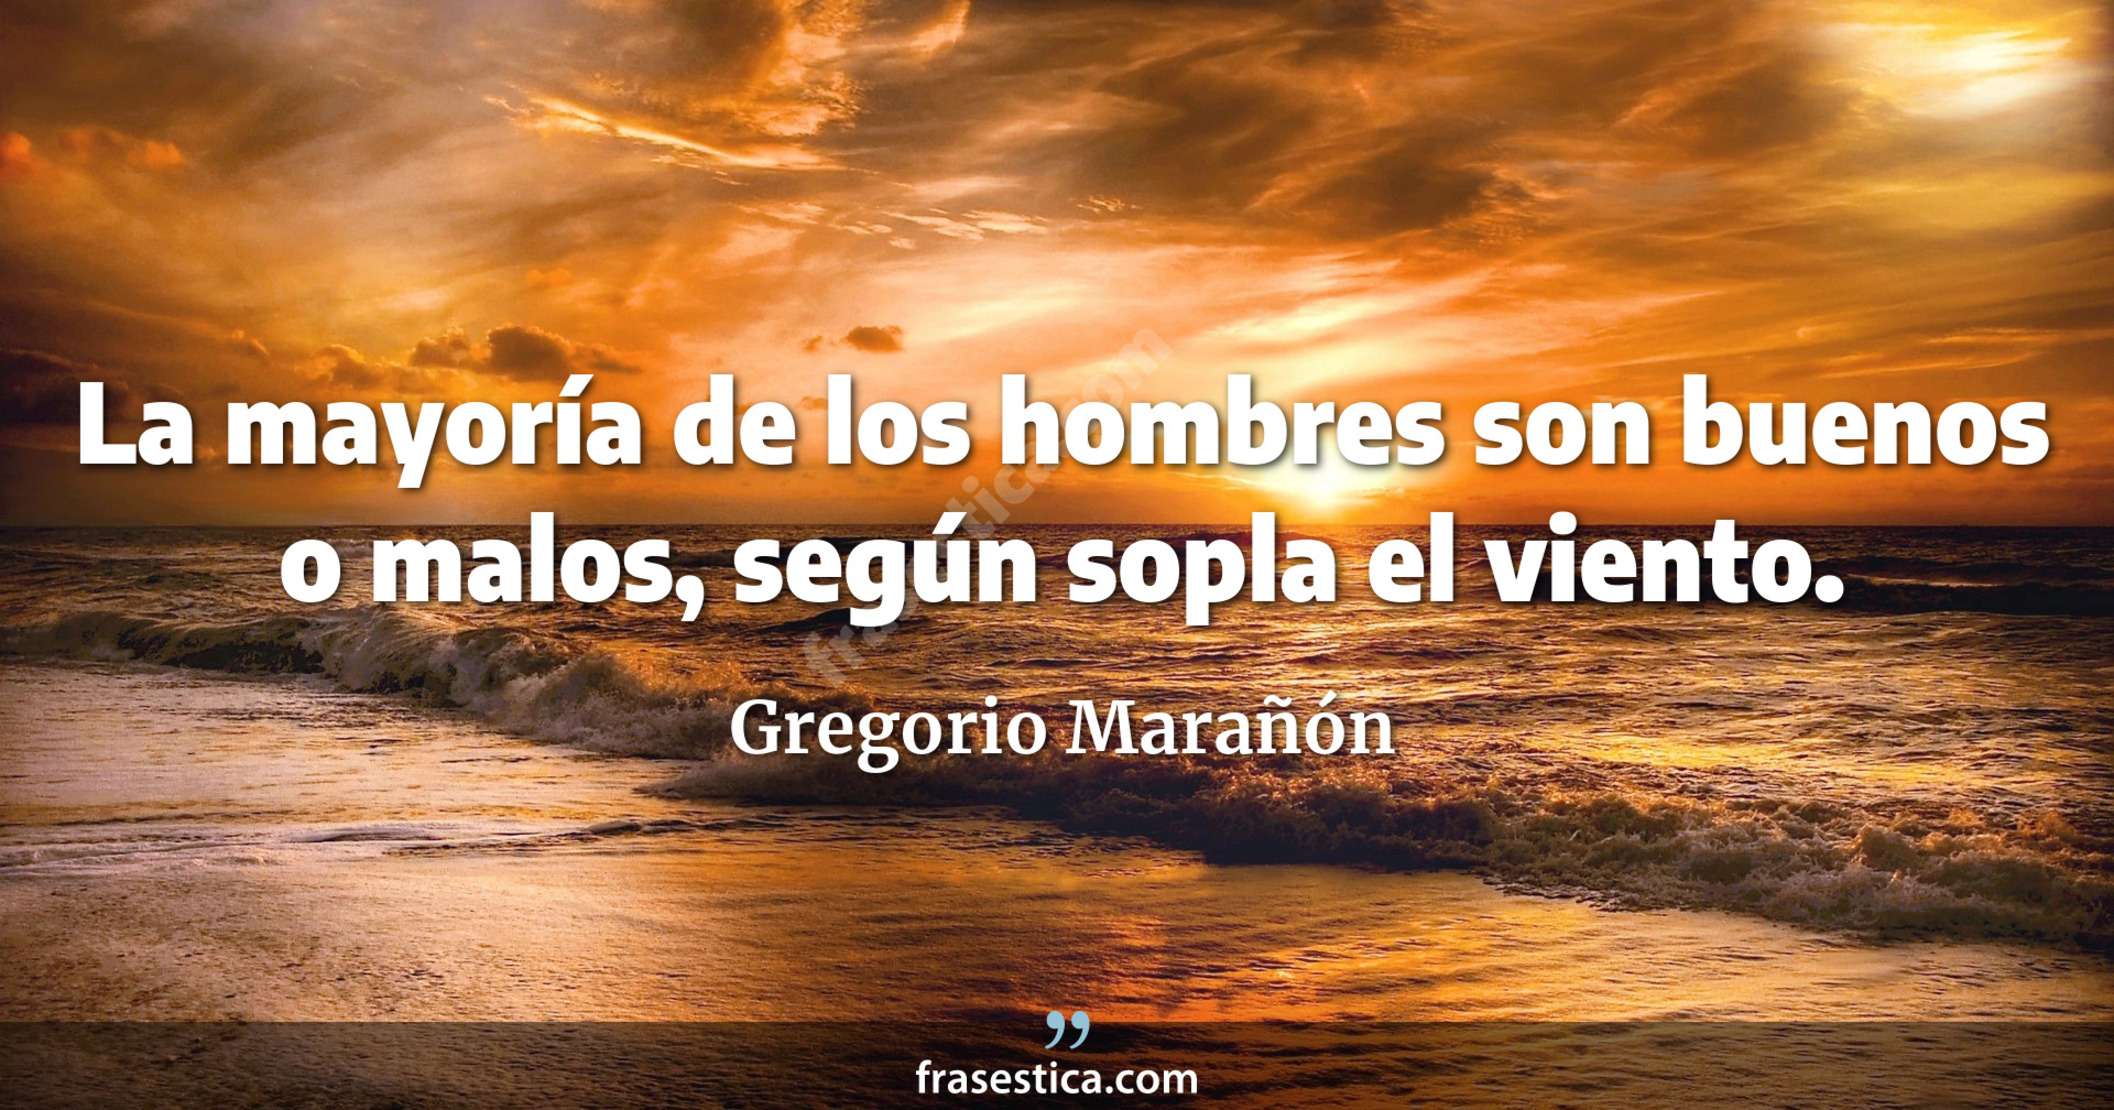 La mayoría de los hombres son buenos o malos, según sopla el viento. - Gregorio Marañón